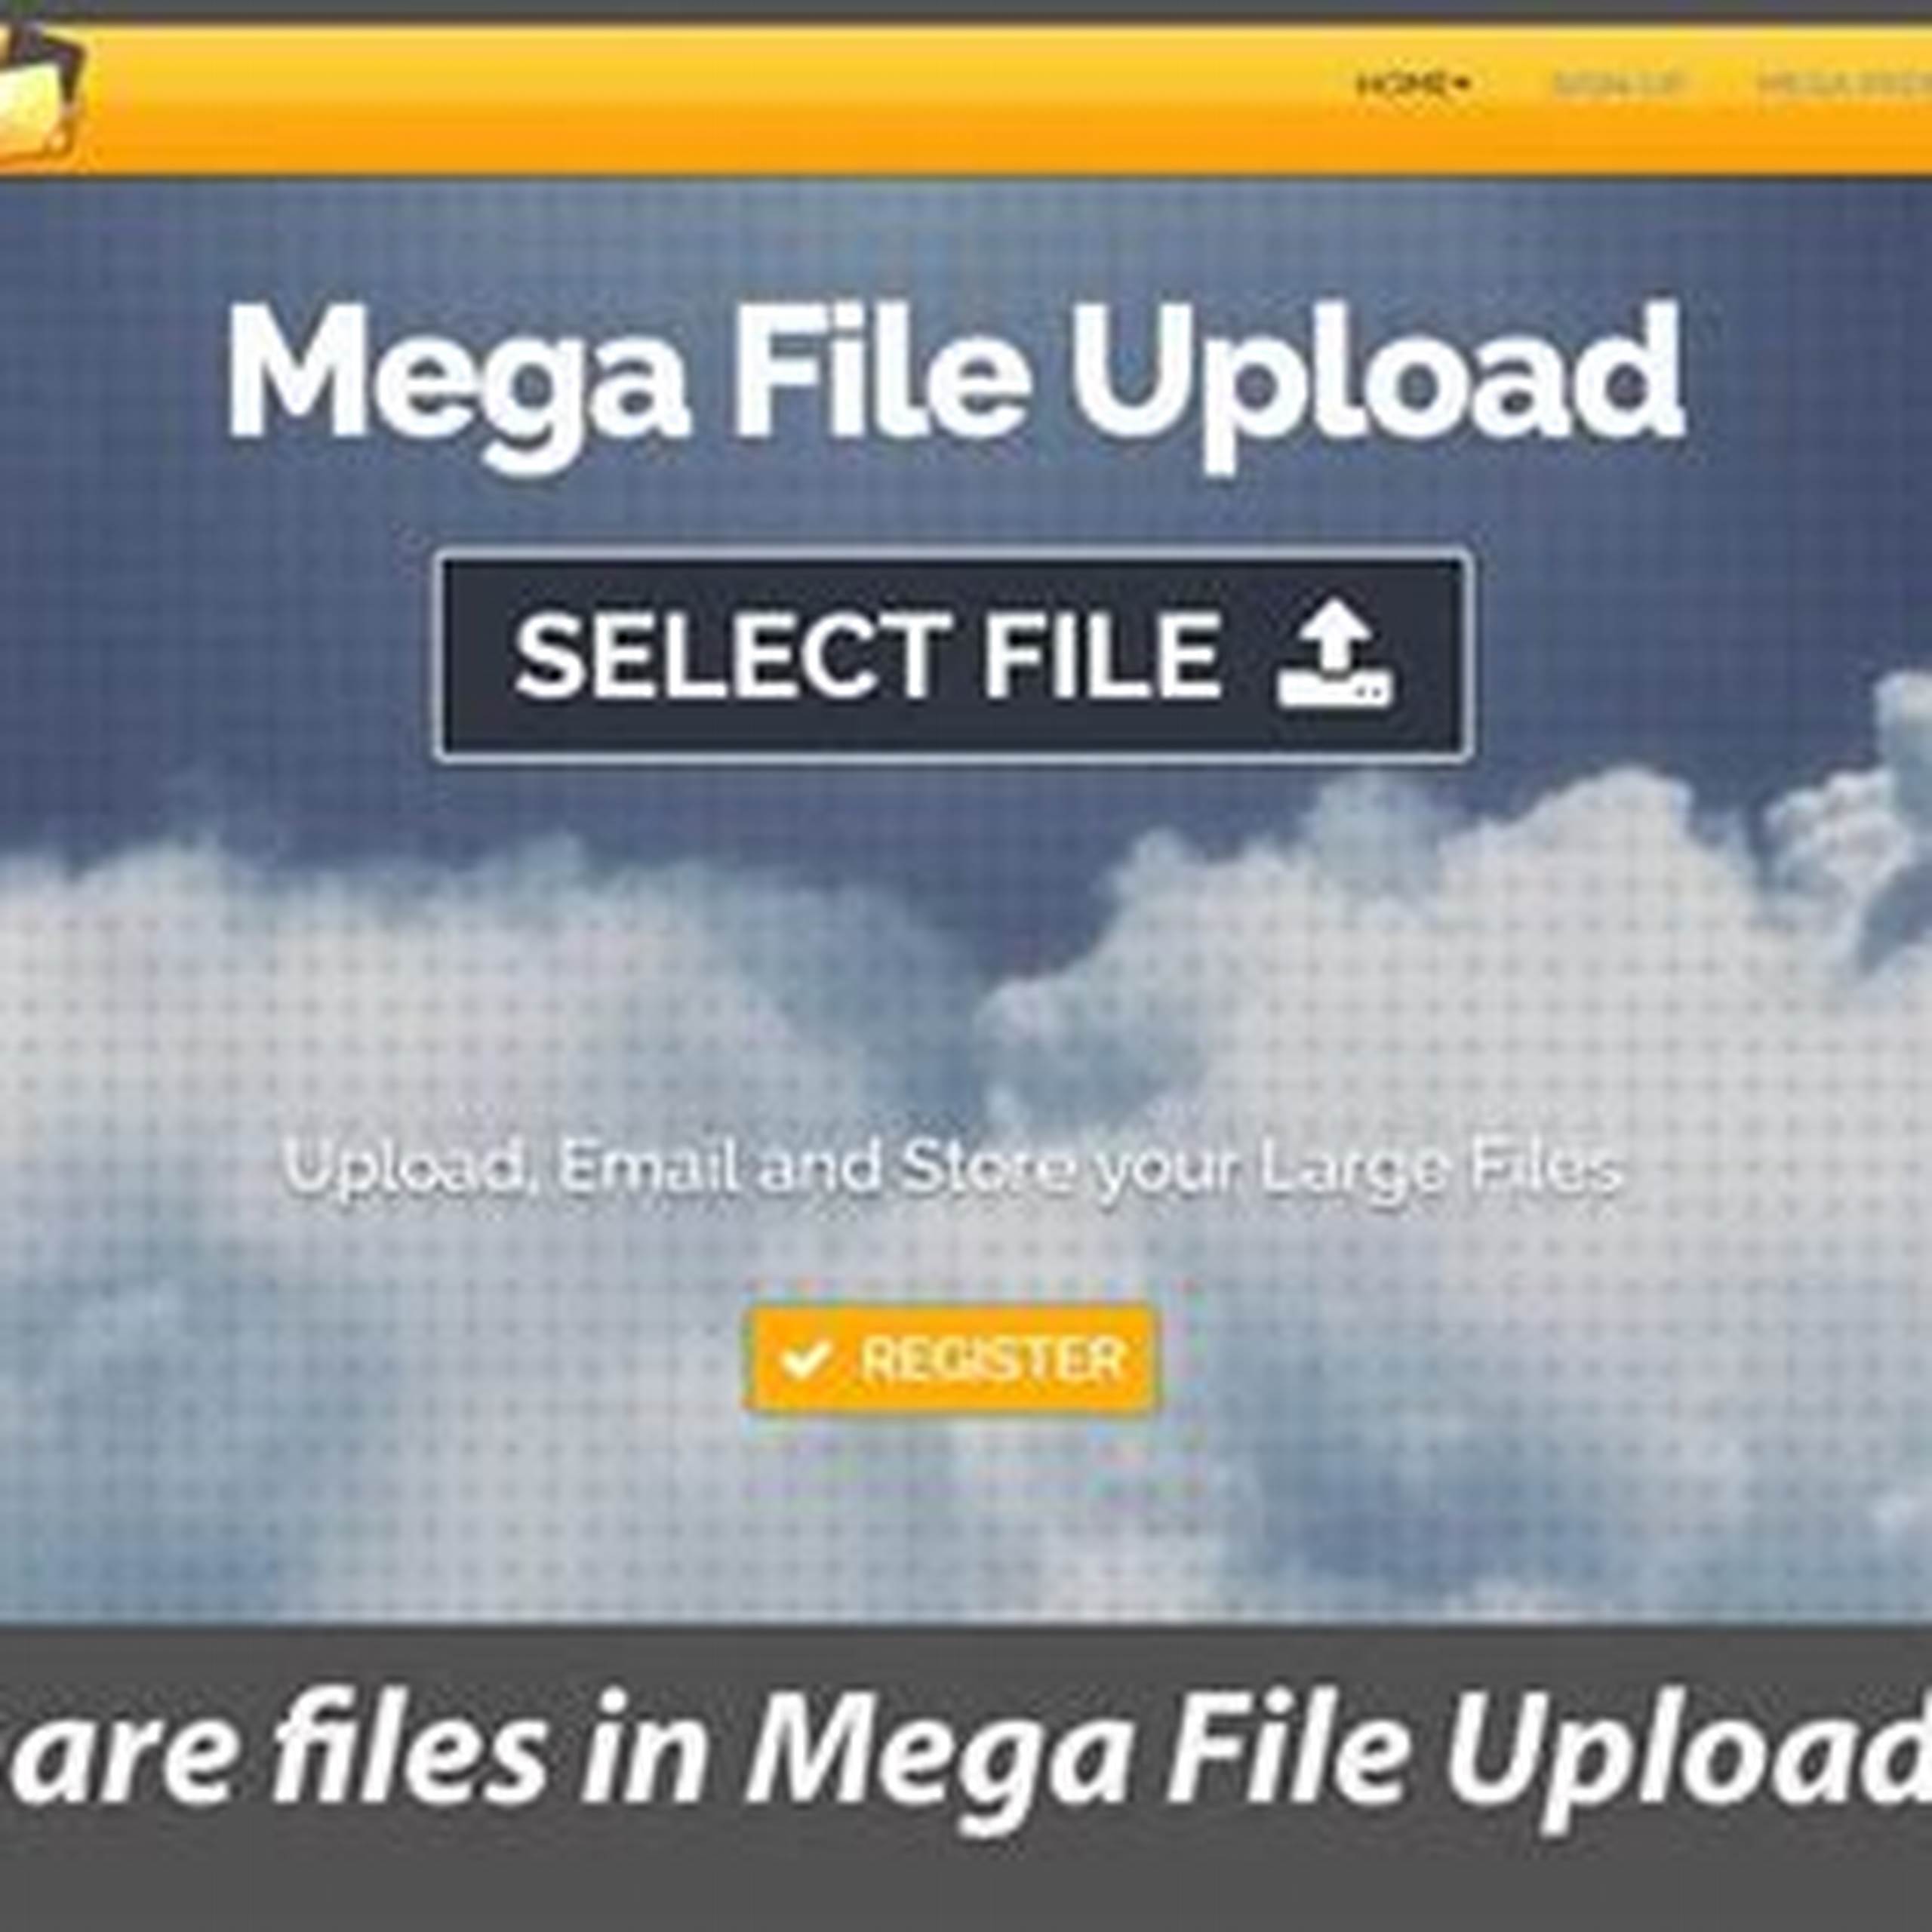 Megafile upload file sharing service